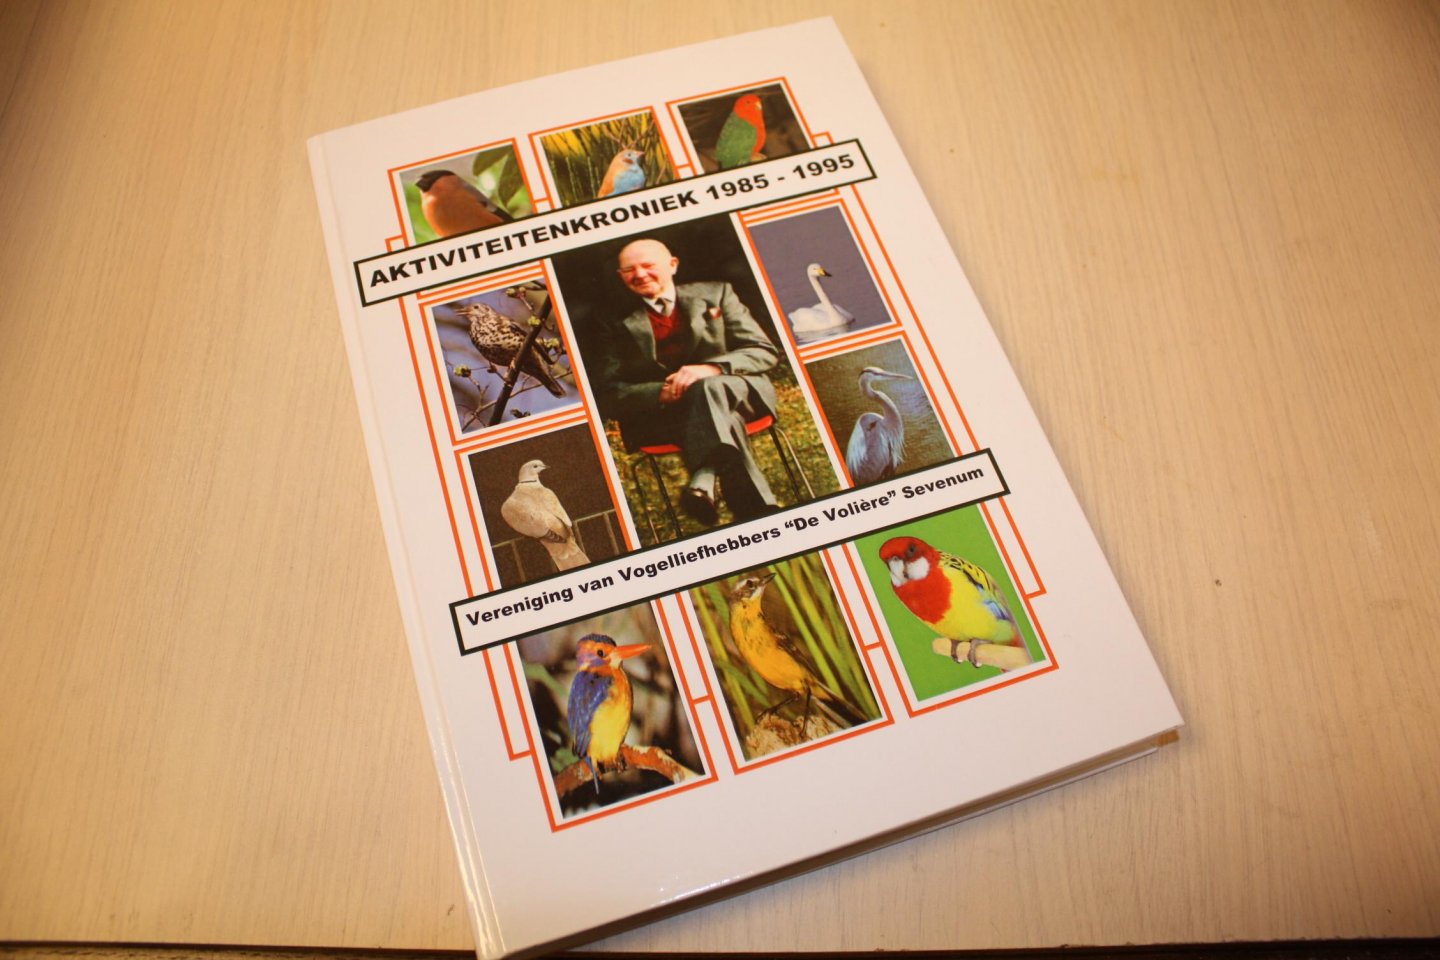 Redactie - Aktiviteitenkroniek 1985-1995  - Vereniging van vogelliefhebbers "De Volière", Sevenum